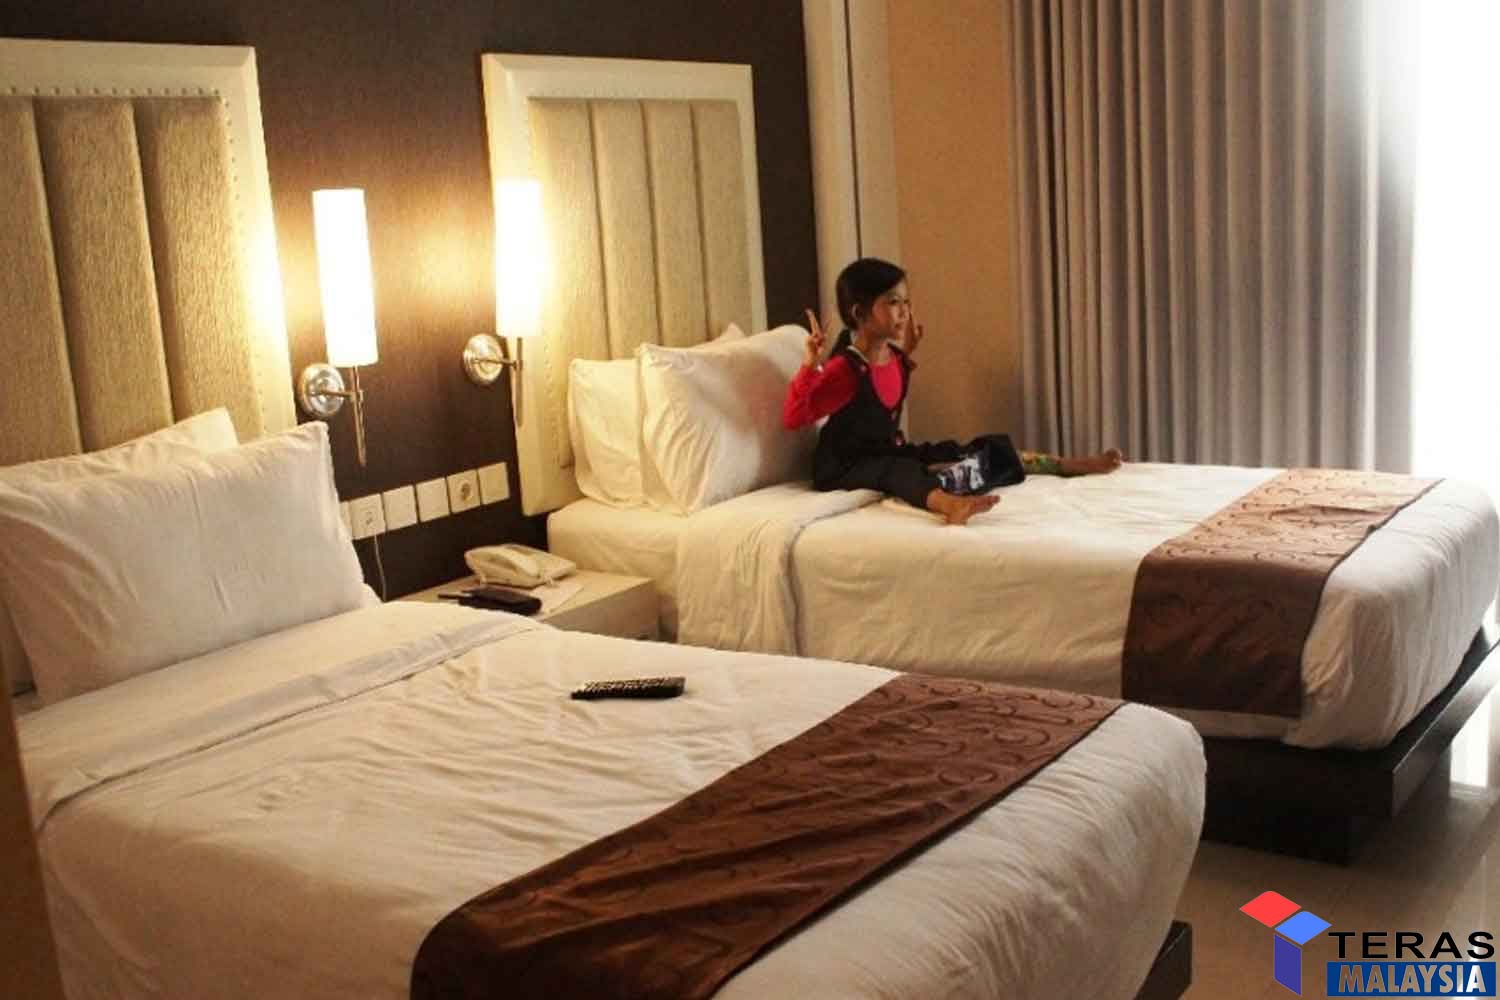 Cara senang elak gangguan makhluk bila menginap di hotel masa cuti bersama keluarga